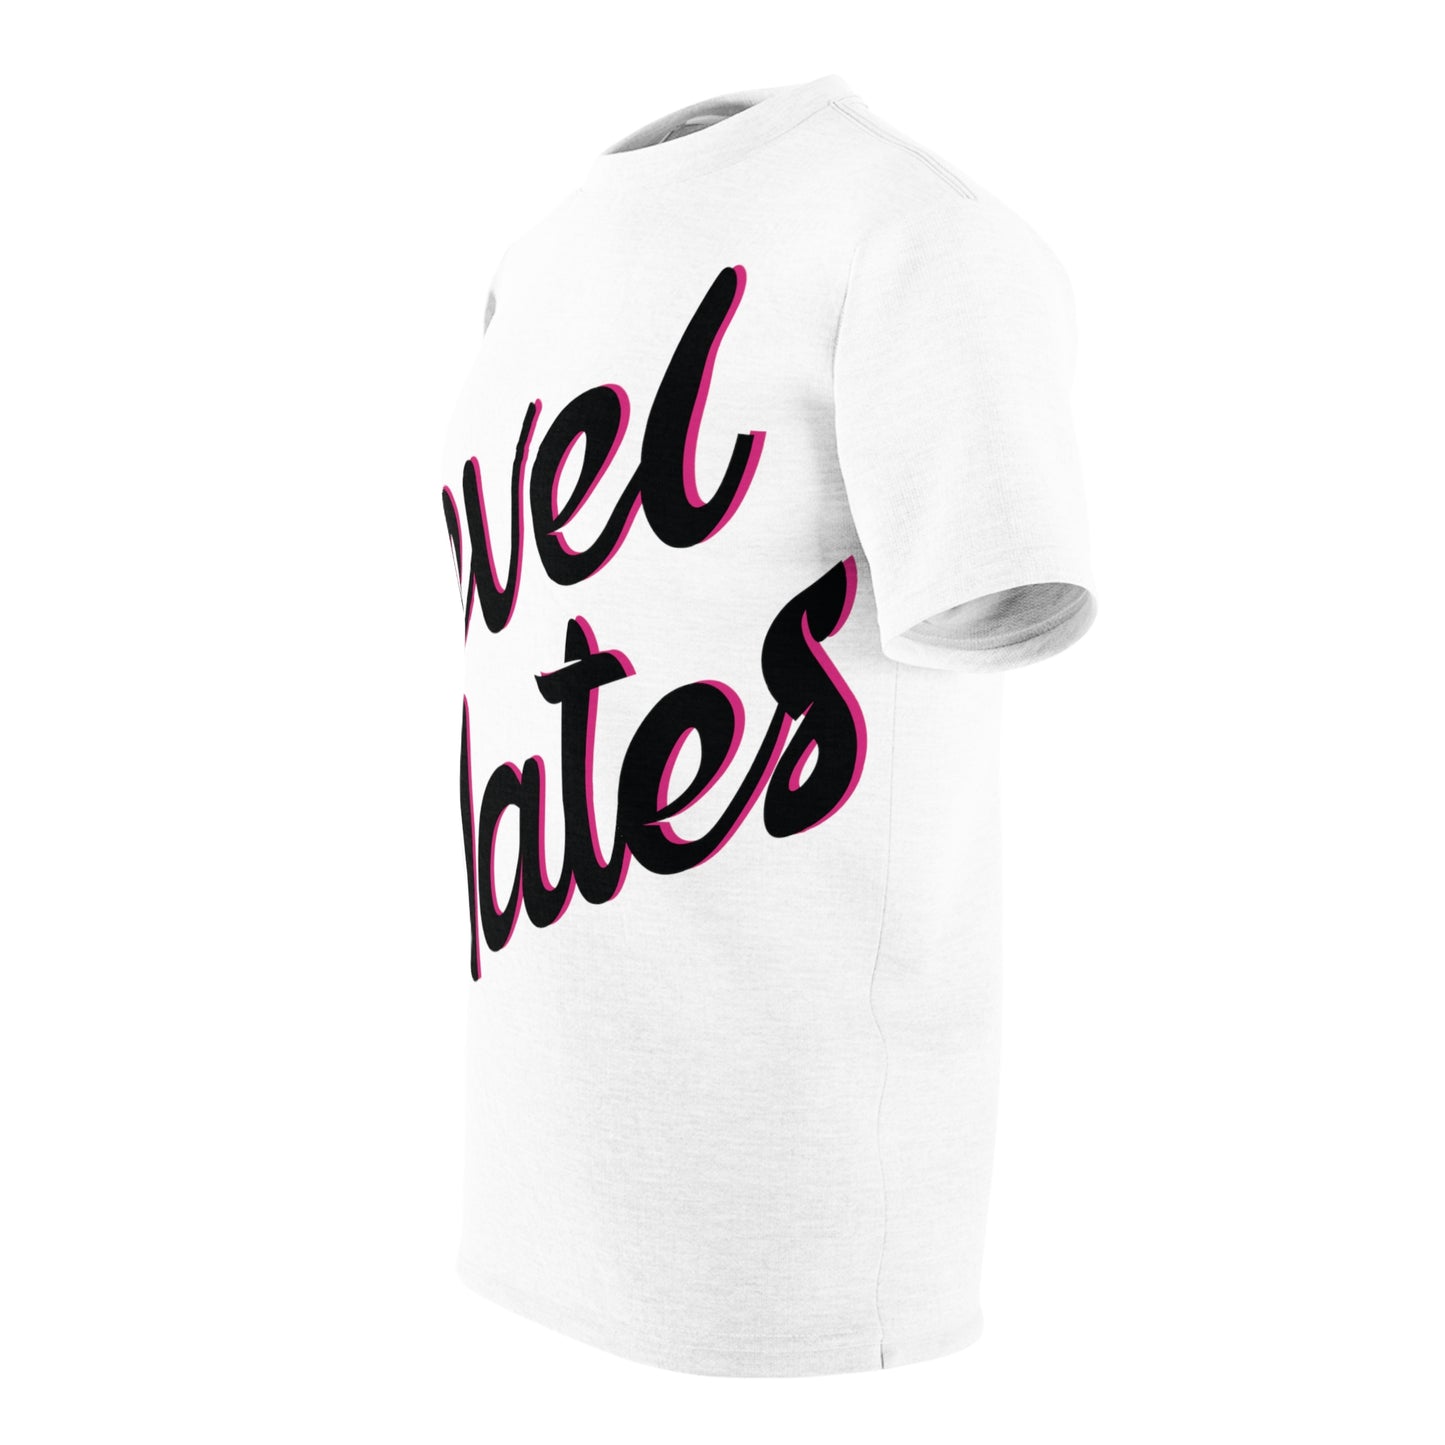 Unisex T-Shirt | All Over Print Tee | White & Black RevelMates Design